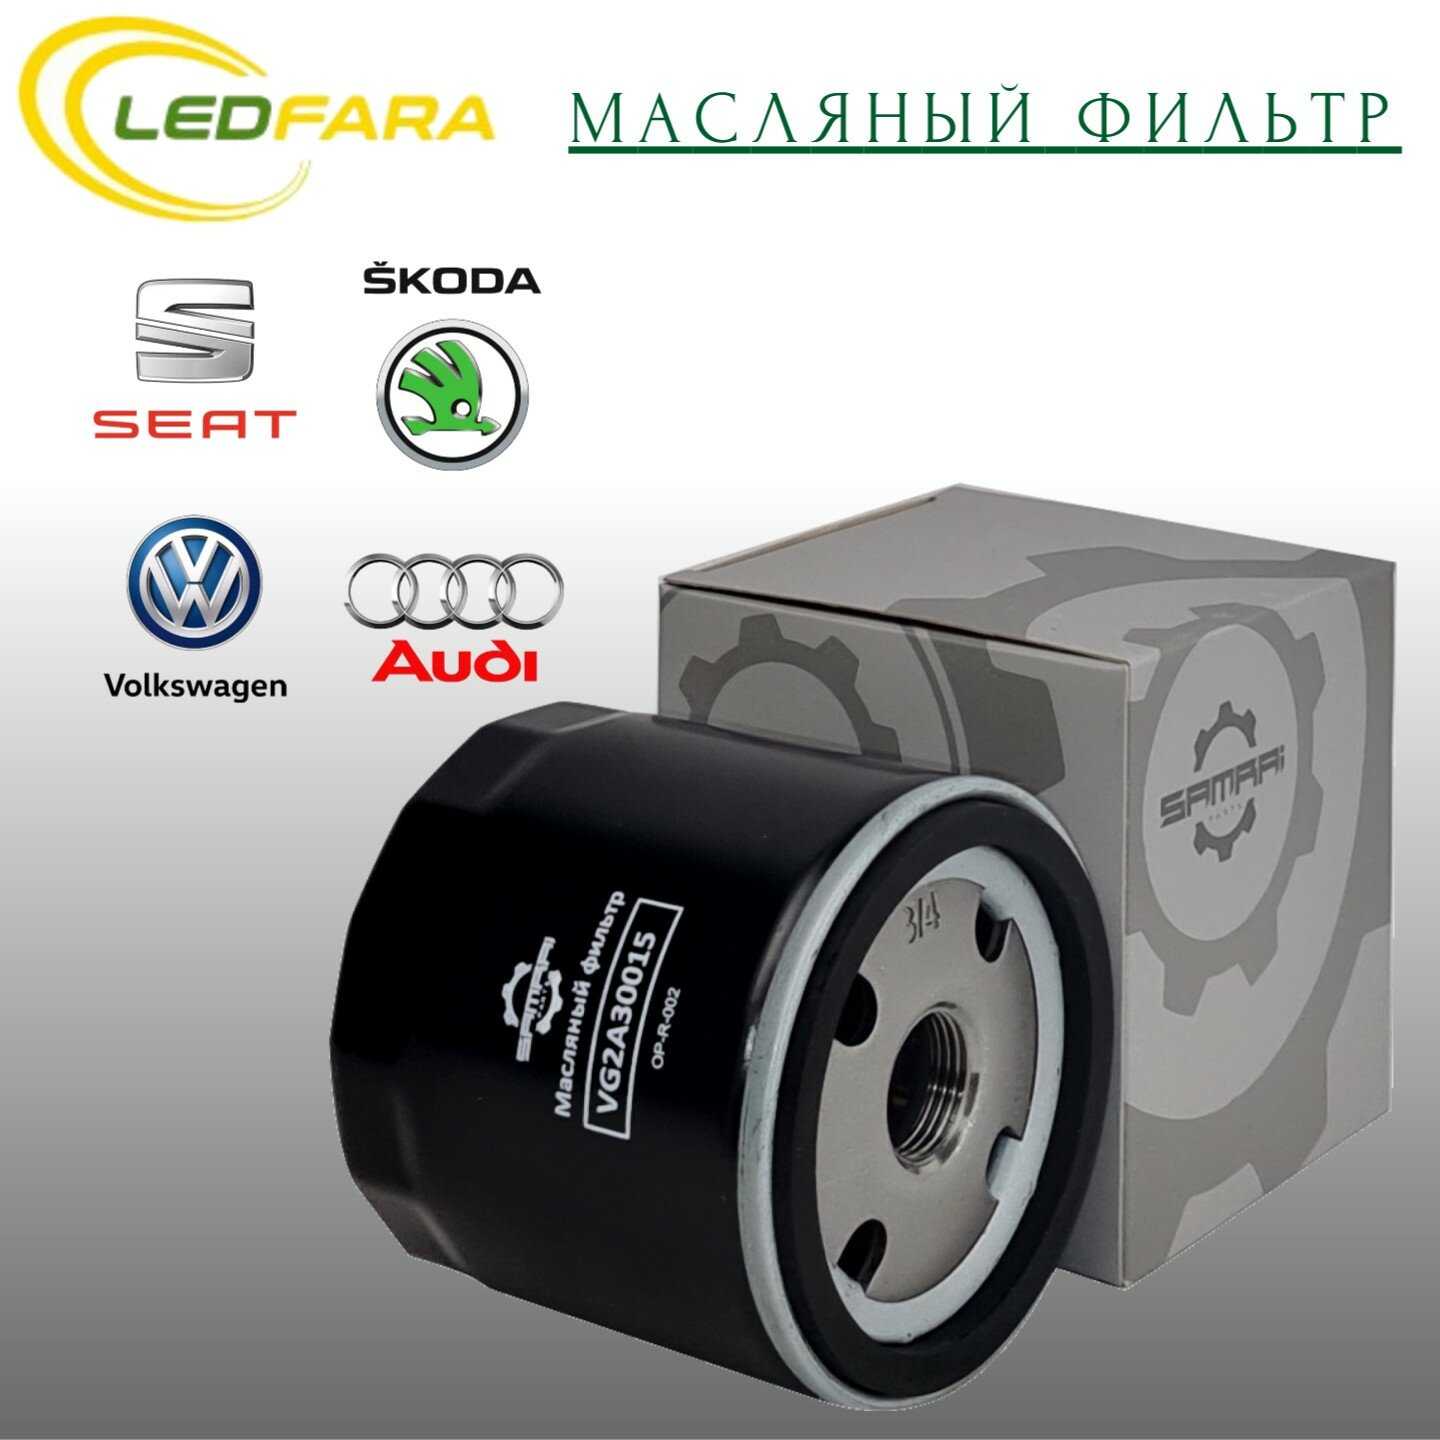 Масляный фильтр Samrai Parts для Audi Volkswagen Skoda VG2A30015 04E 115 561 H W 712/95 51003A2